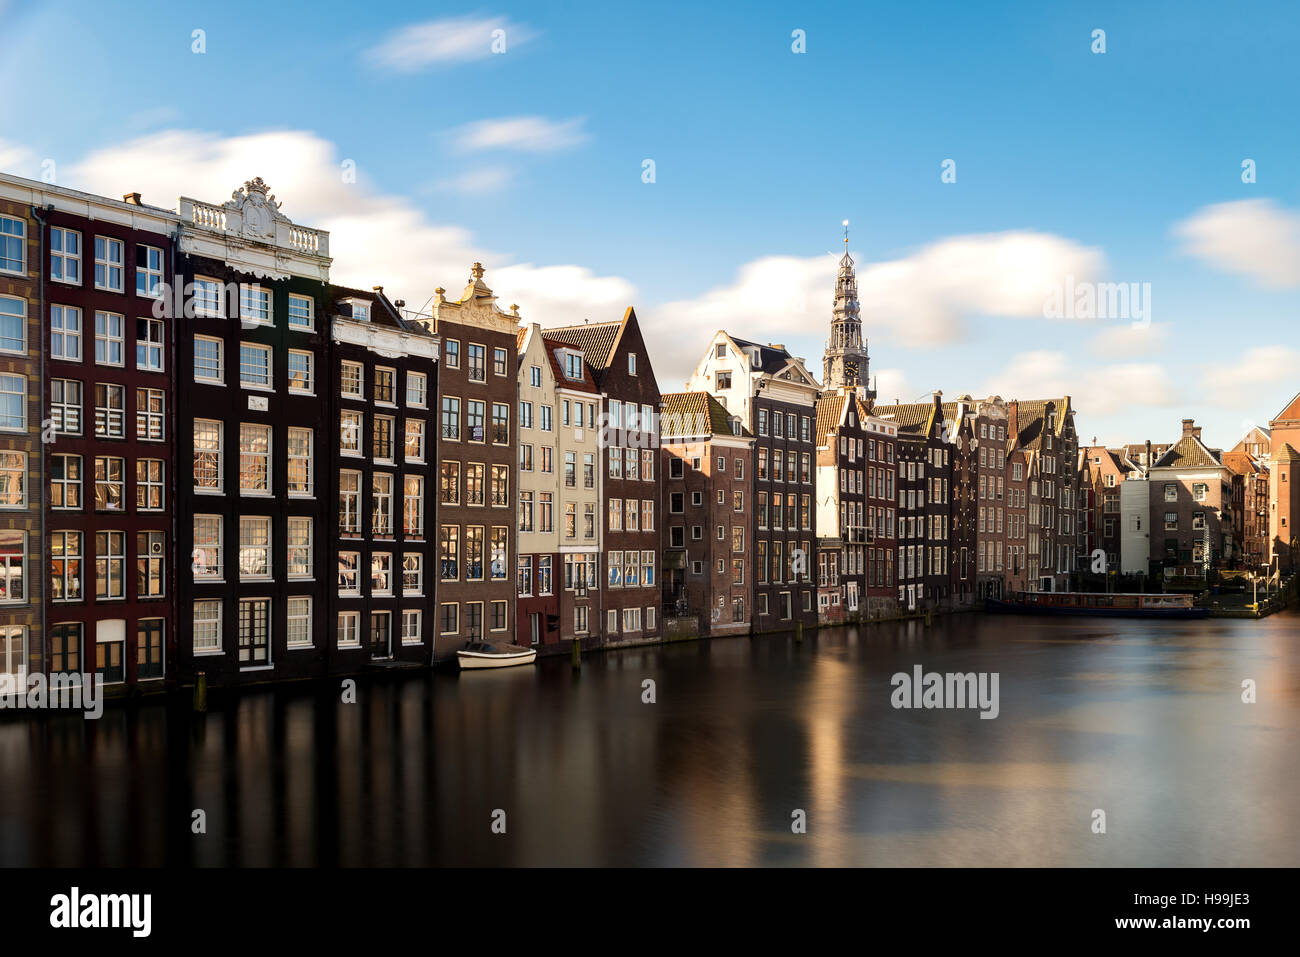 Vue sur la ville d'Amsterdam Pays-Bas maisons traditionnelles avec la rivière Amstel à Amsterdam, Pays-Bas Banque D'Images